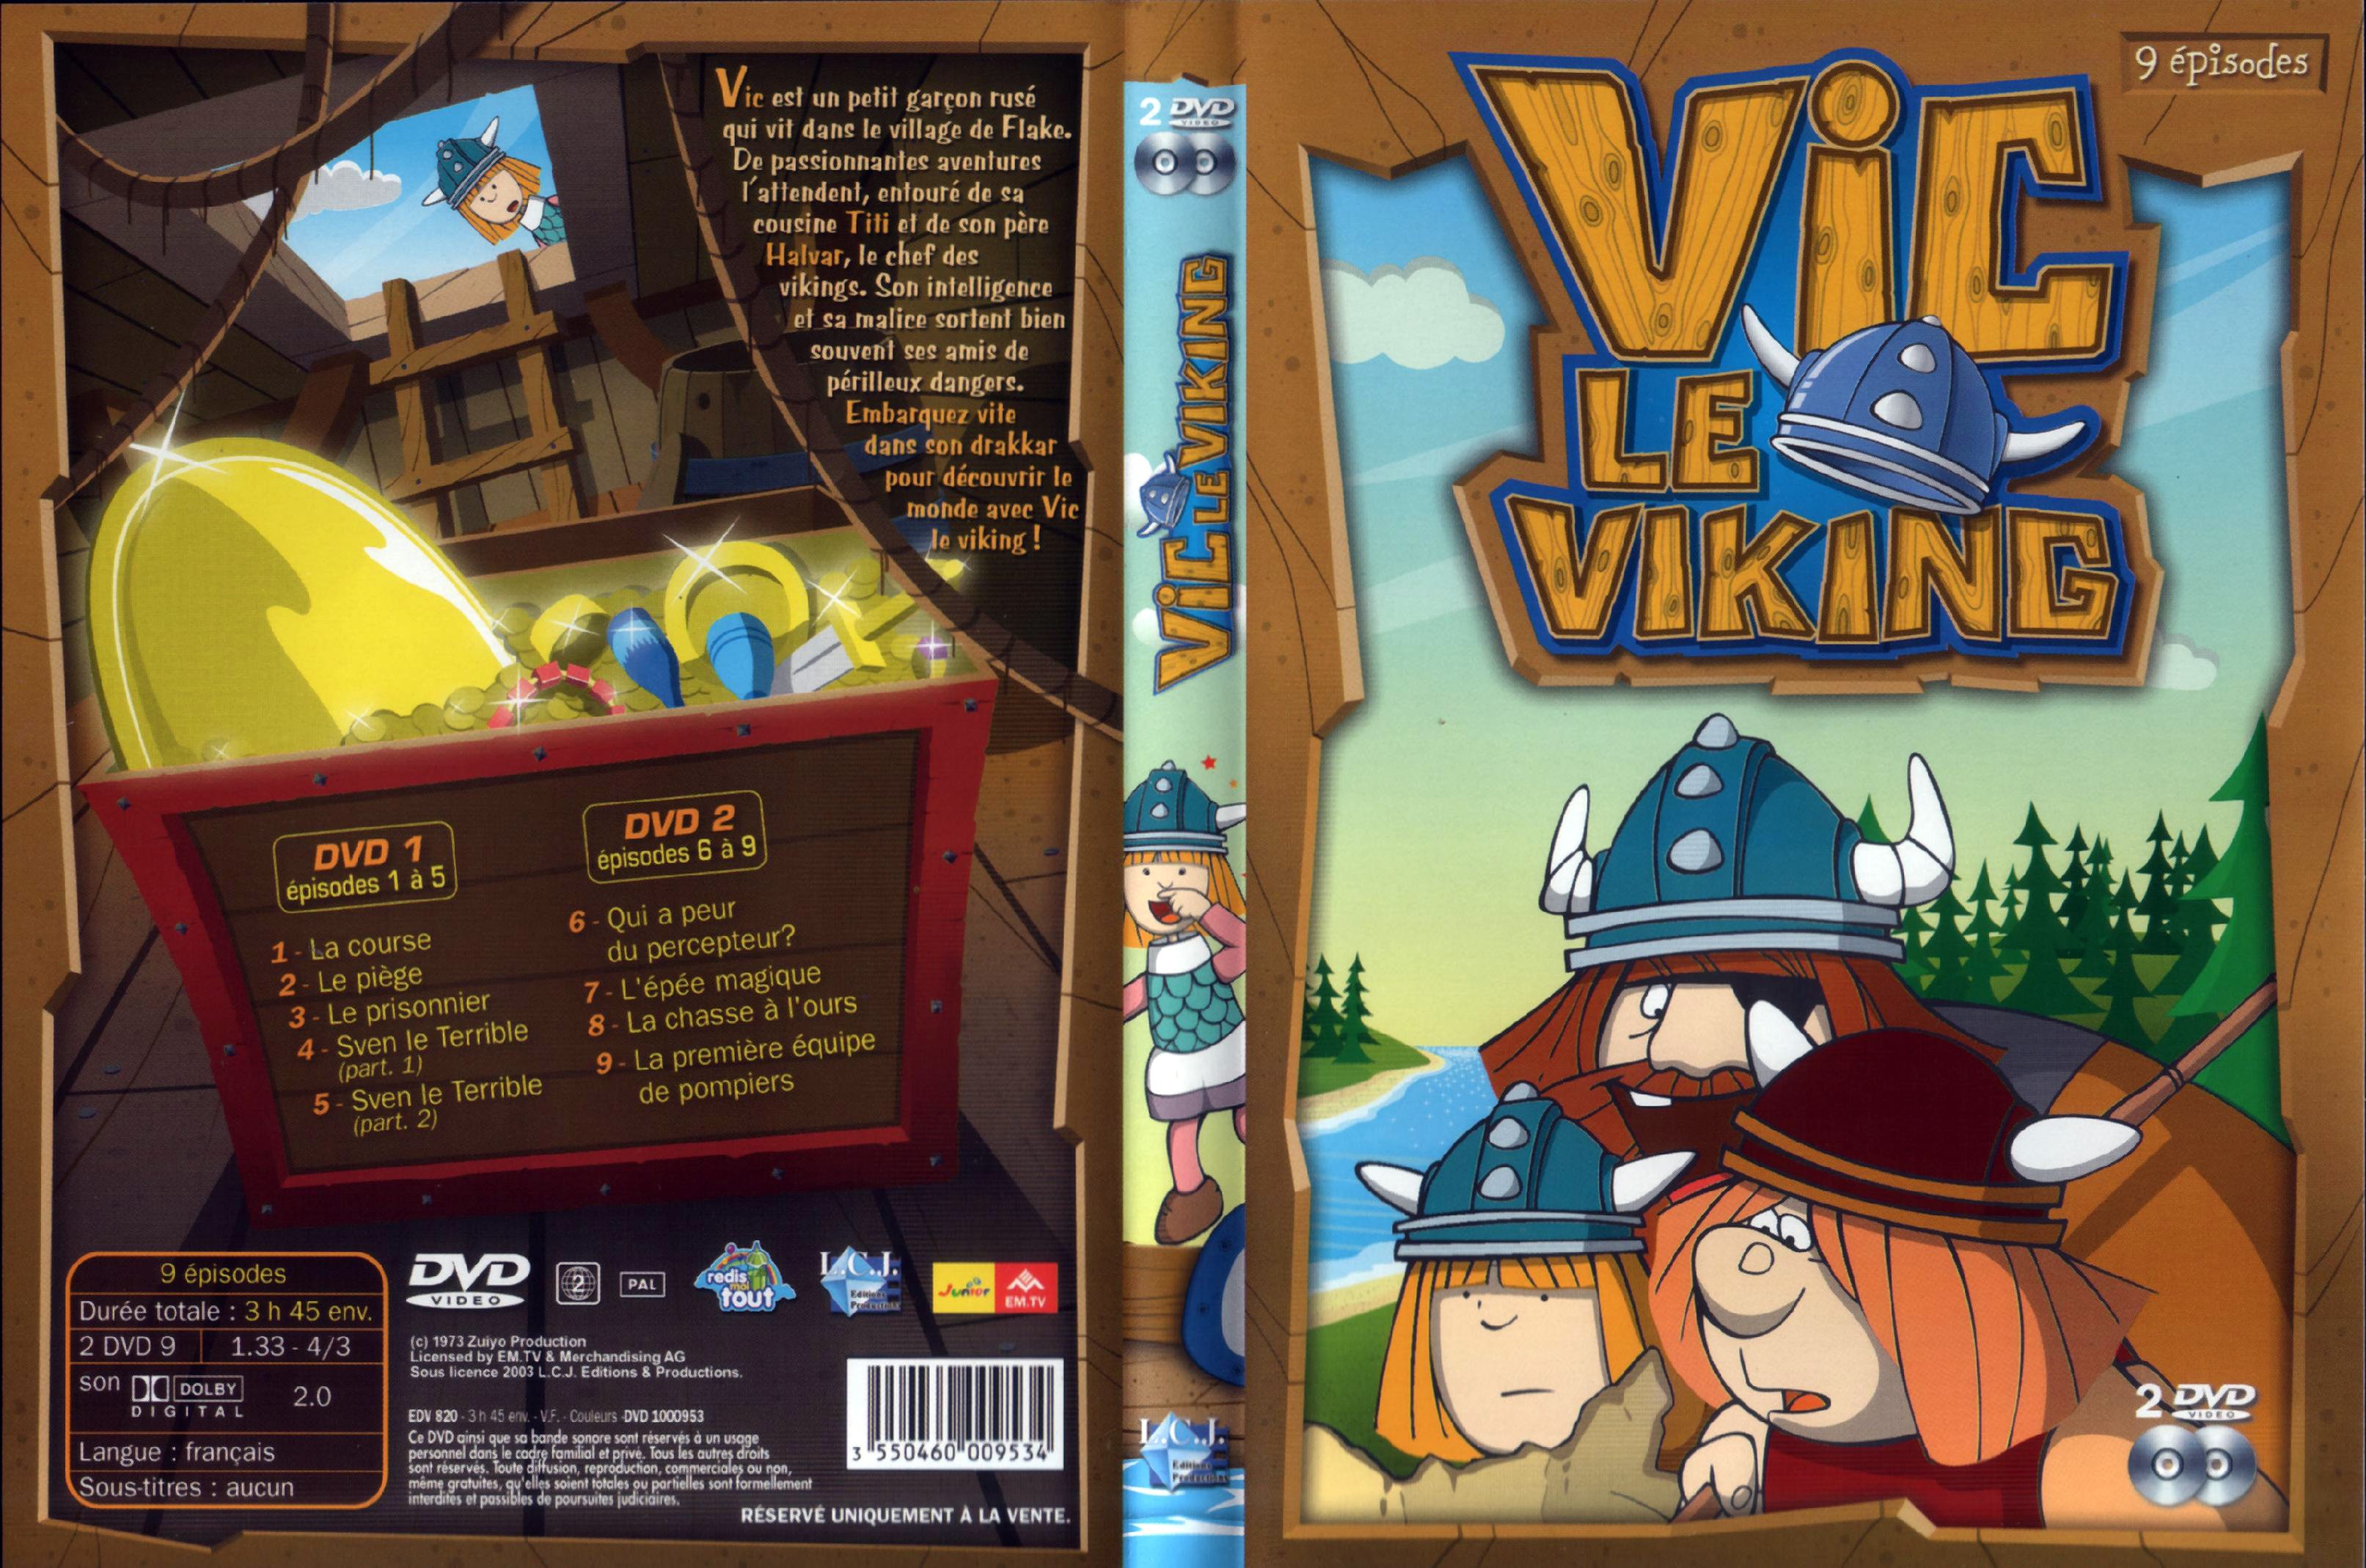 Jaquette DVD Vic le viking vol 1